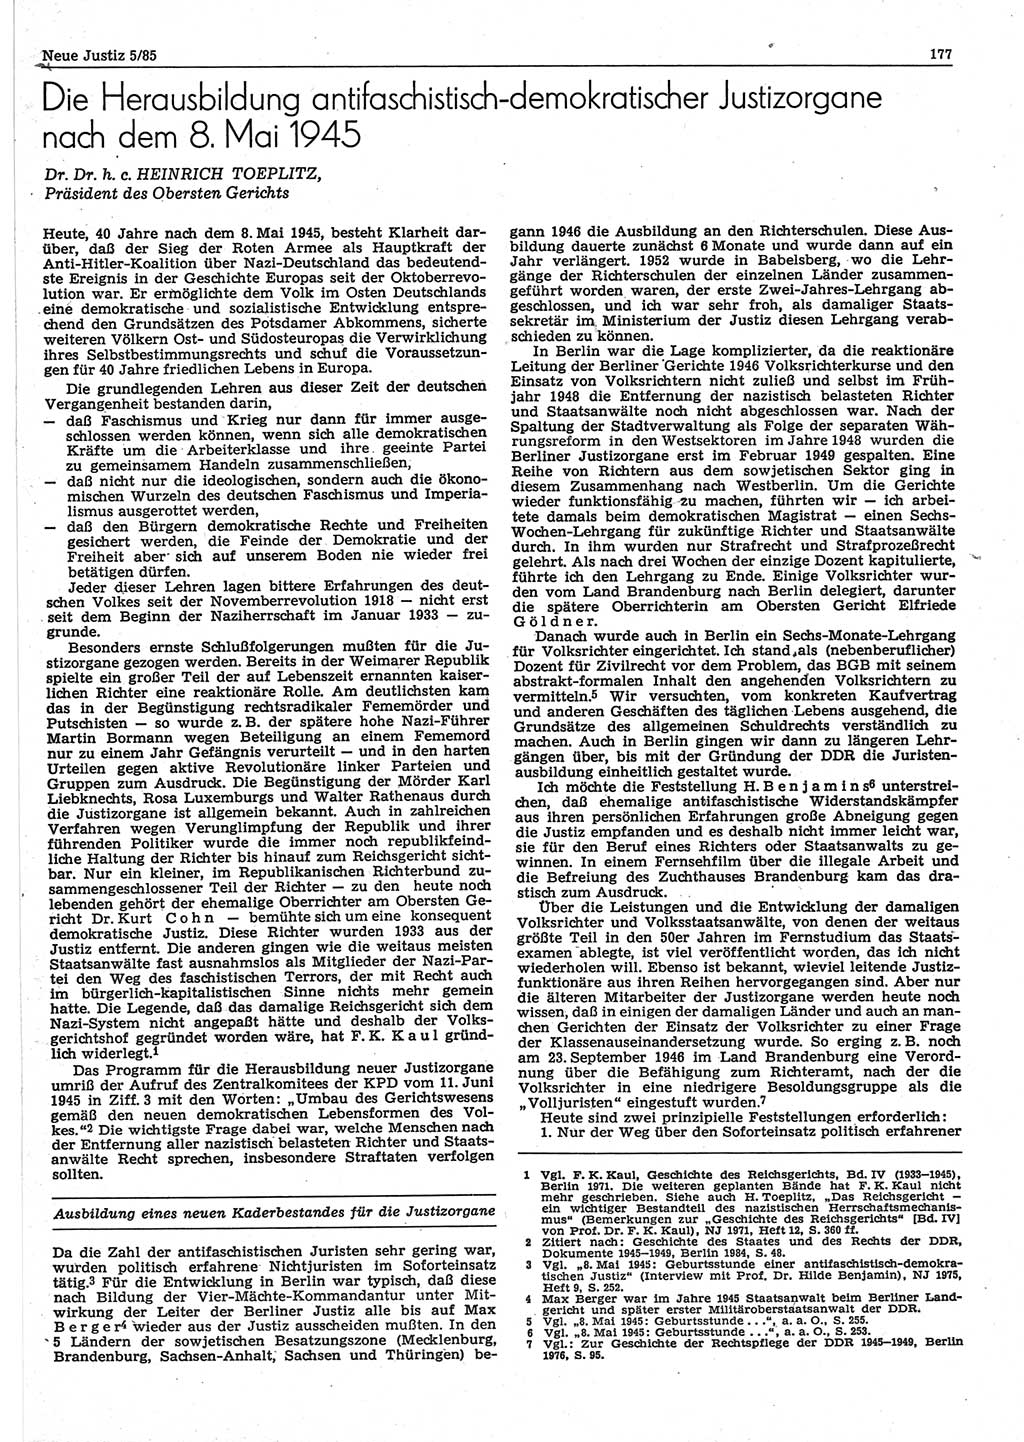 Neue Justiz (NJ), Zeitschrift für sozialistisches Recht und Gesetzlichkeit [Deutsche Demokratische Republik (DDR)], 39. Jahrgang 1985, Seite 177 (NJ DDR 1985, S. 177)